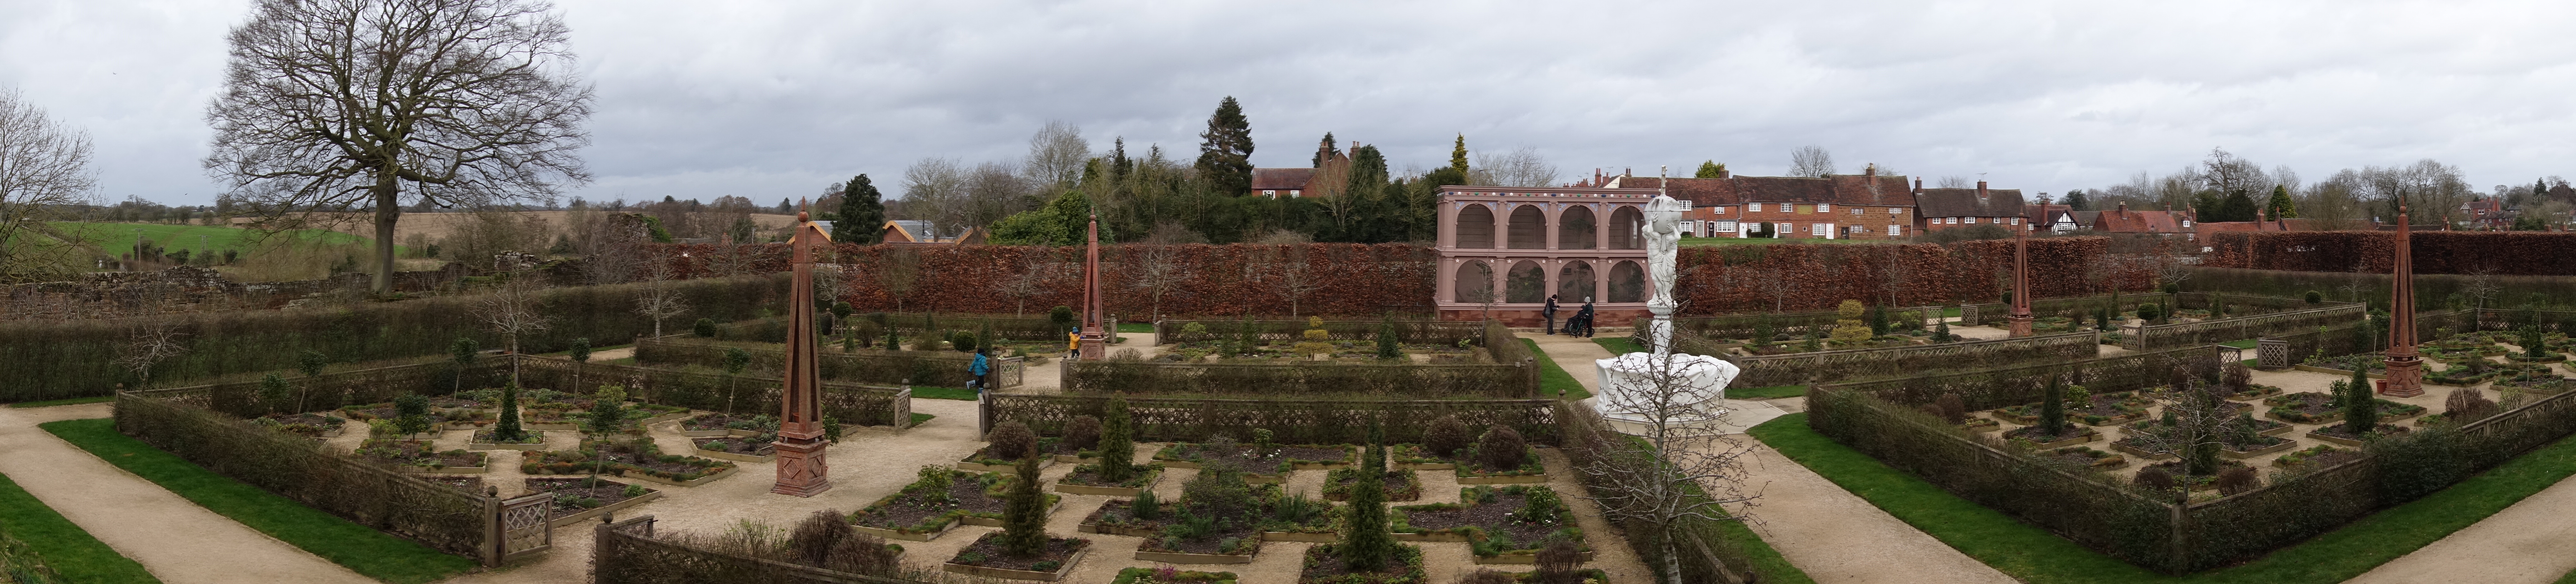 Elizabethan garden - photo by Juliamaud